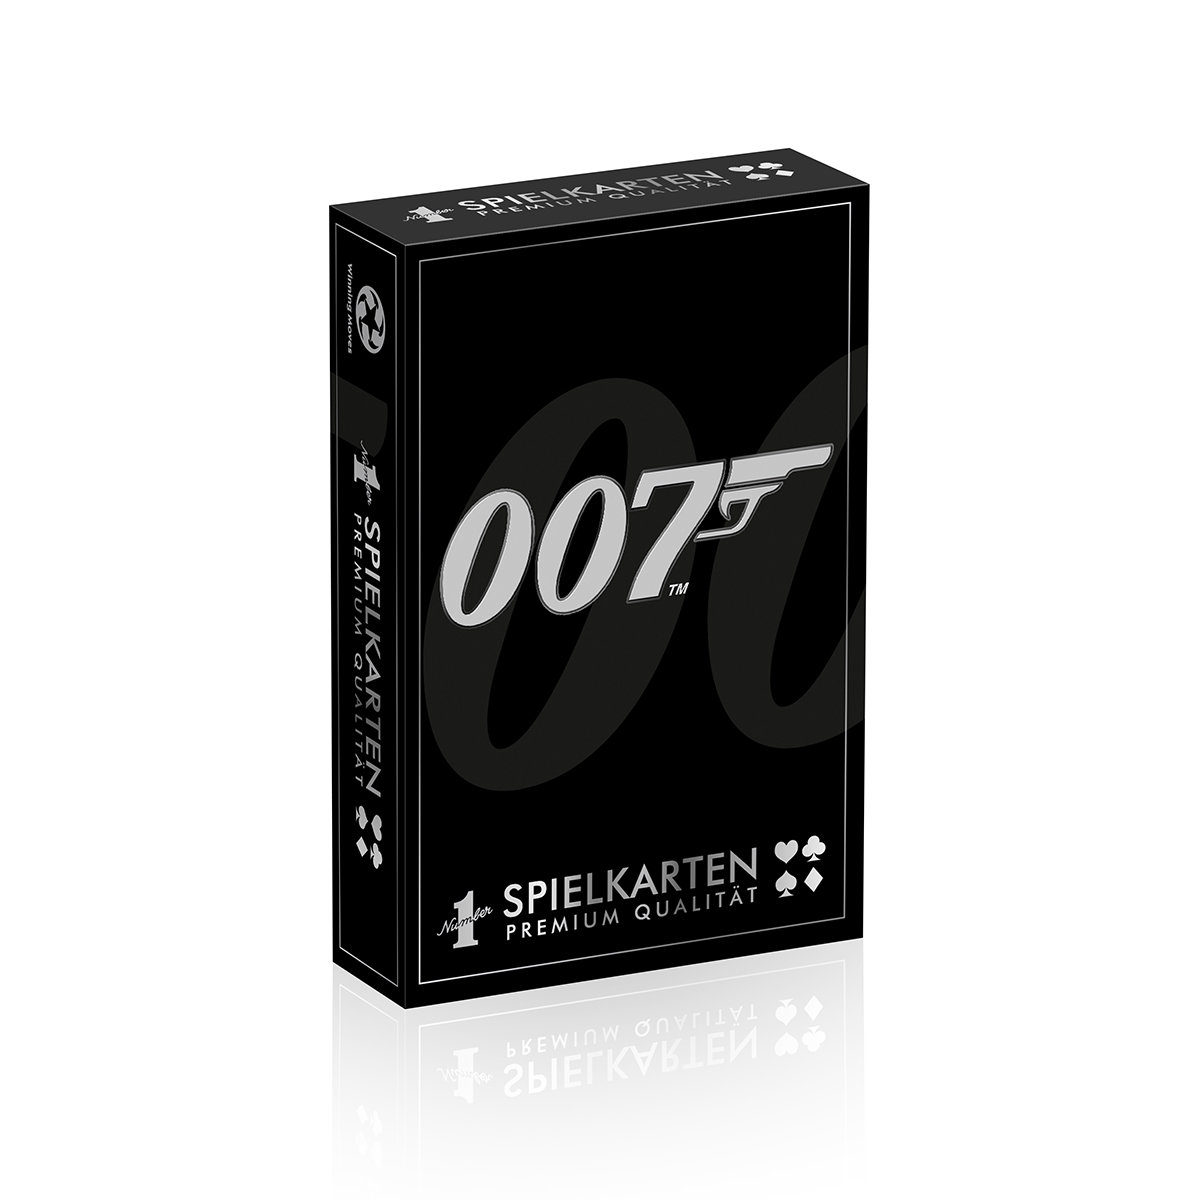 Number 1 Spielkarten James Bond 007